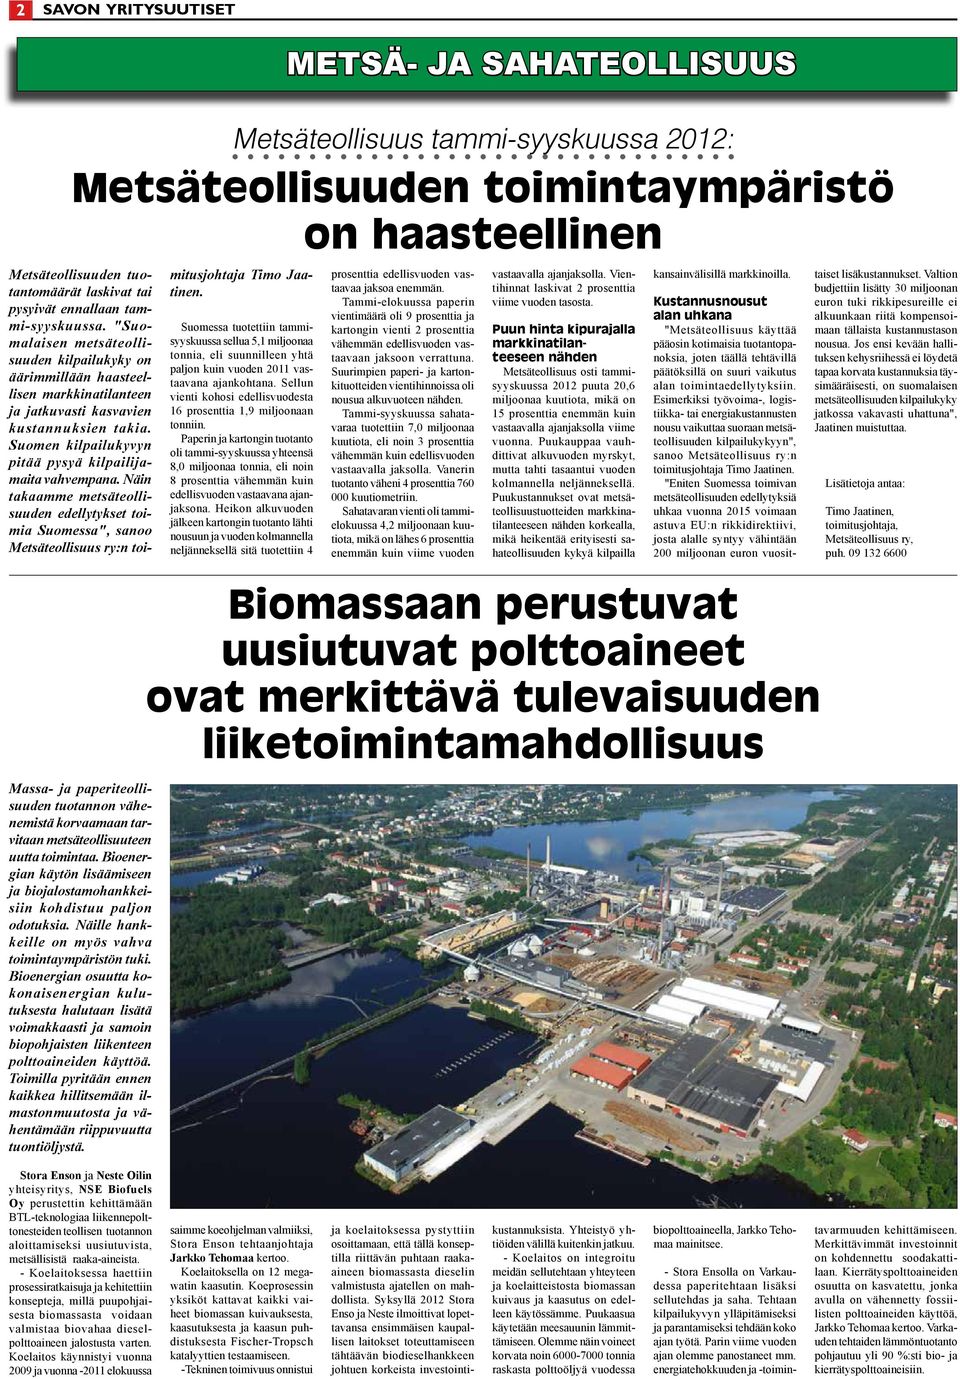 Näin takaamme metsäteollisuuden edellytykset toimia Suomessa", sanoo Metsäteollisuus ry:n toi- Metsäteollisuus tammi-syyskuussa 2012: Metsäteollisuuden toimintaympäristö on haasteellinen Massa- ja